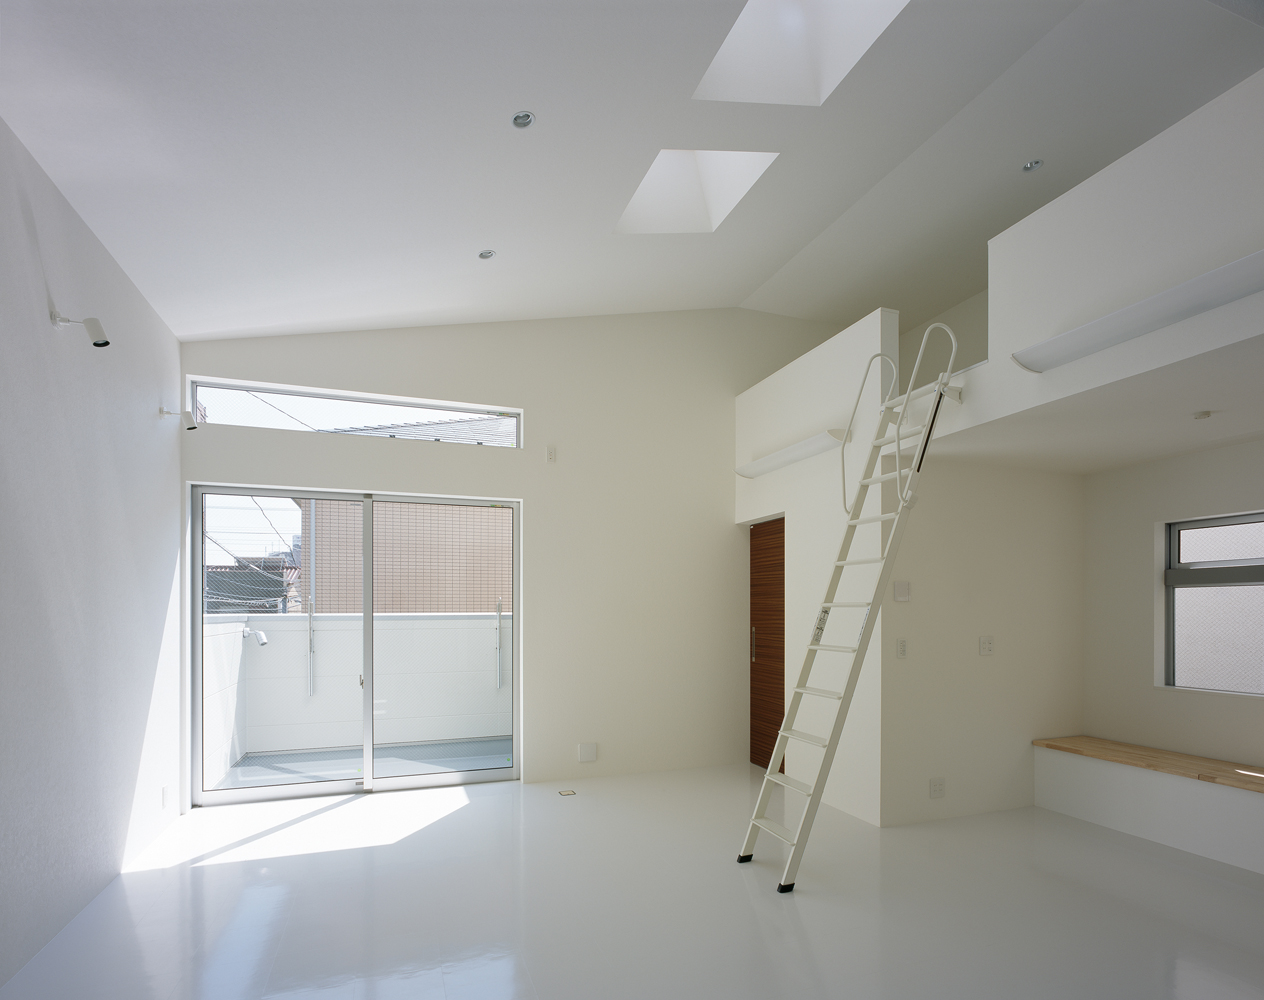 斜め天井より差し込む光が白い床に反射する、のびやかなリビング